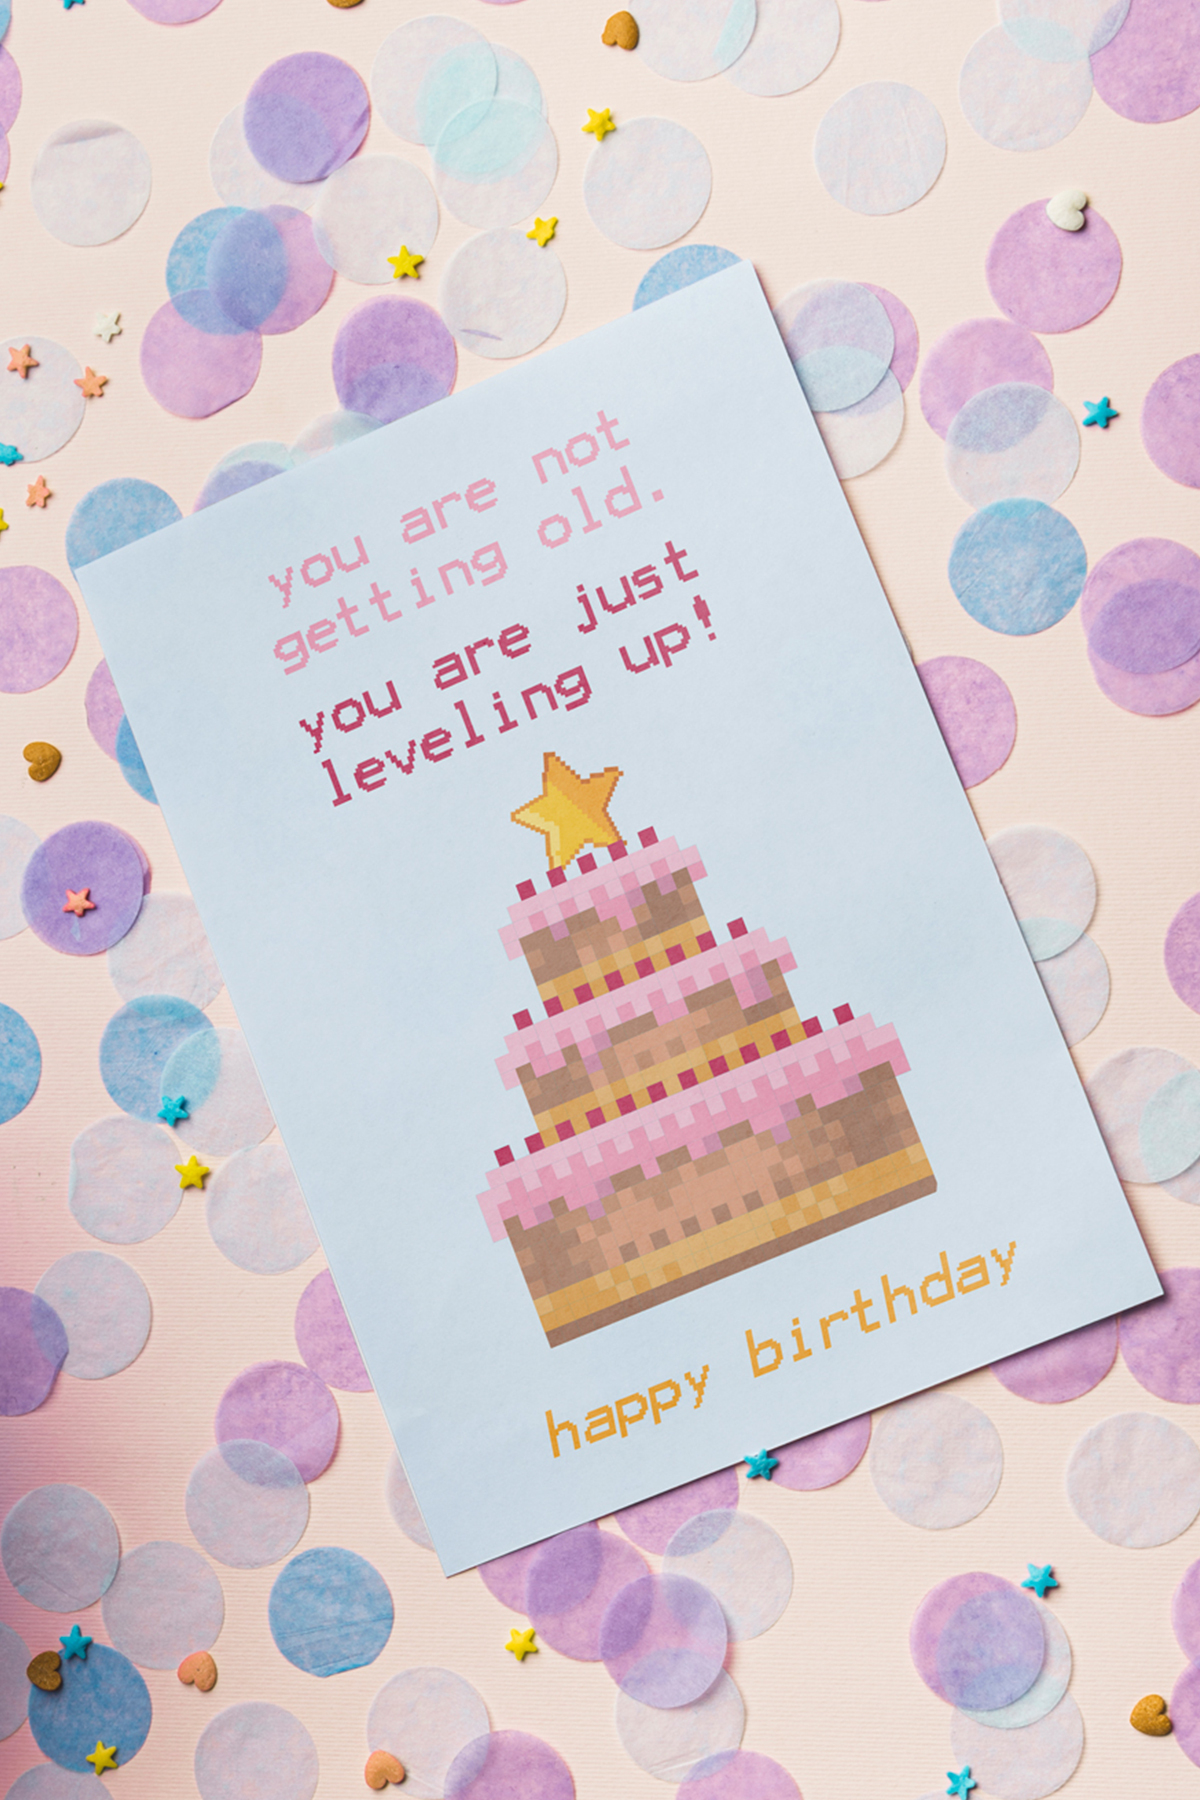 10 Coole Geburtstagskarten Zum Ausdrucken | Free Printable mit Geburtstagskarte Zum Ausdrucken Kostenlos